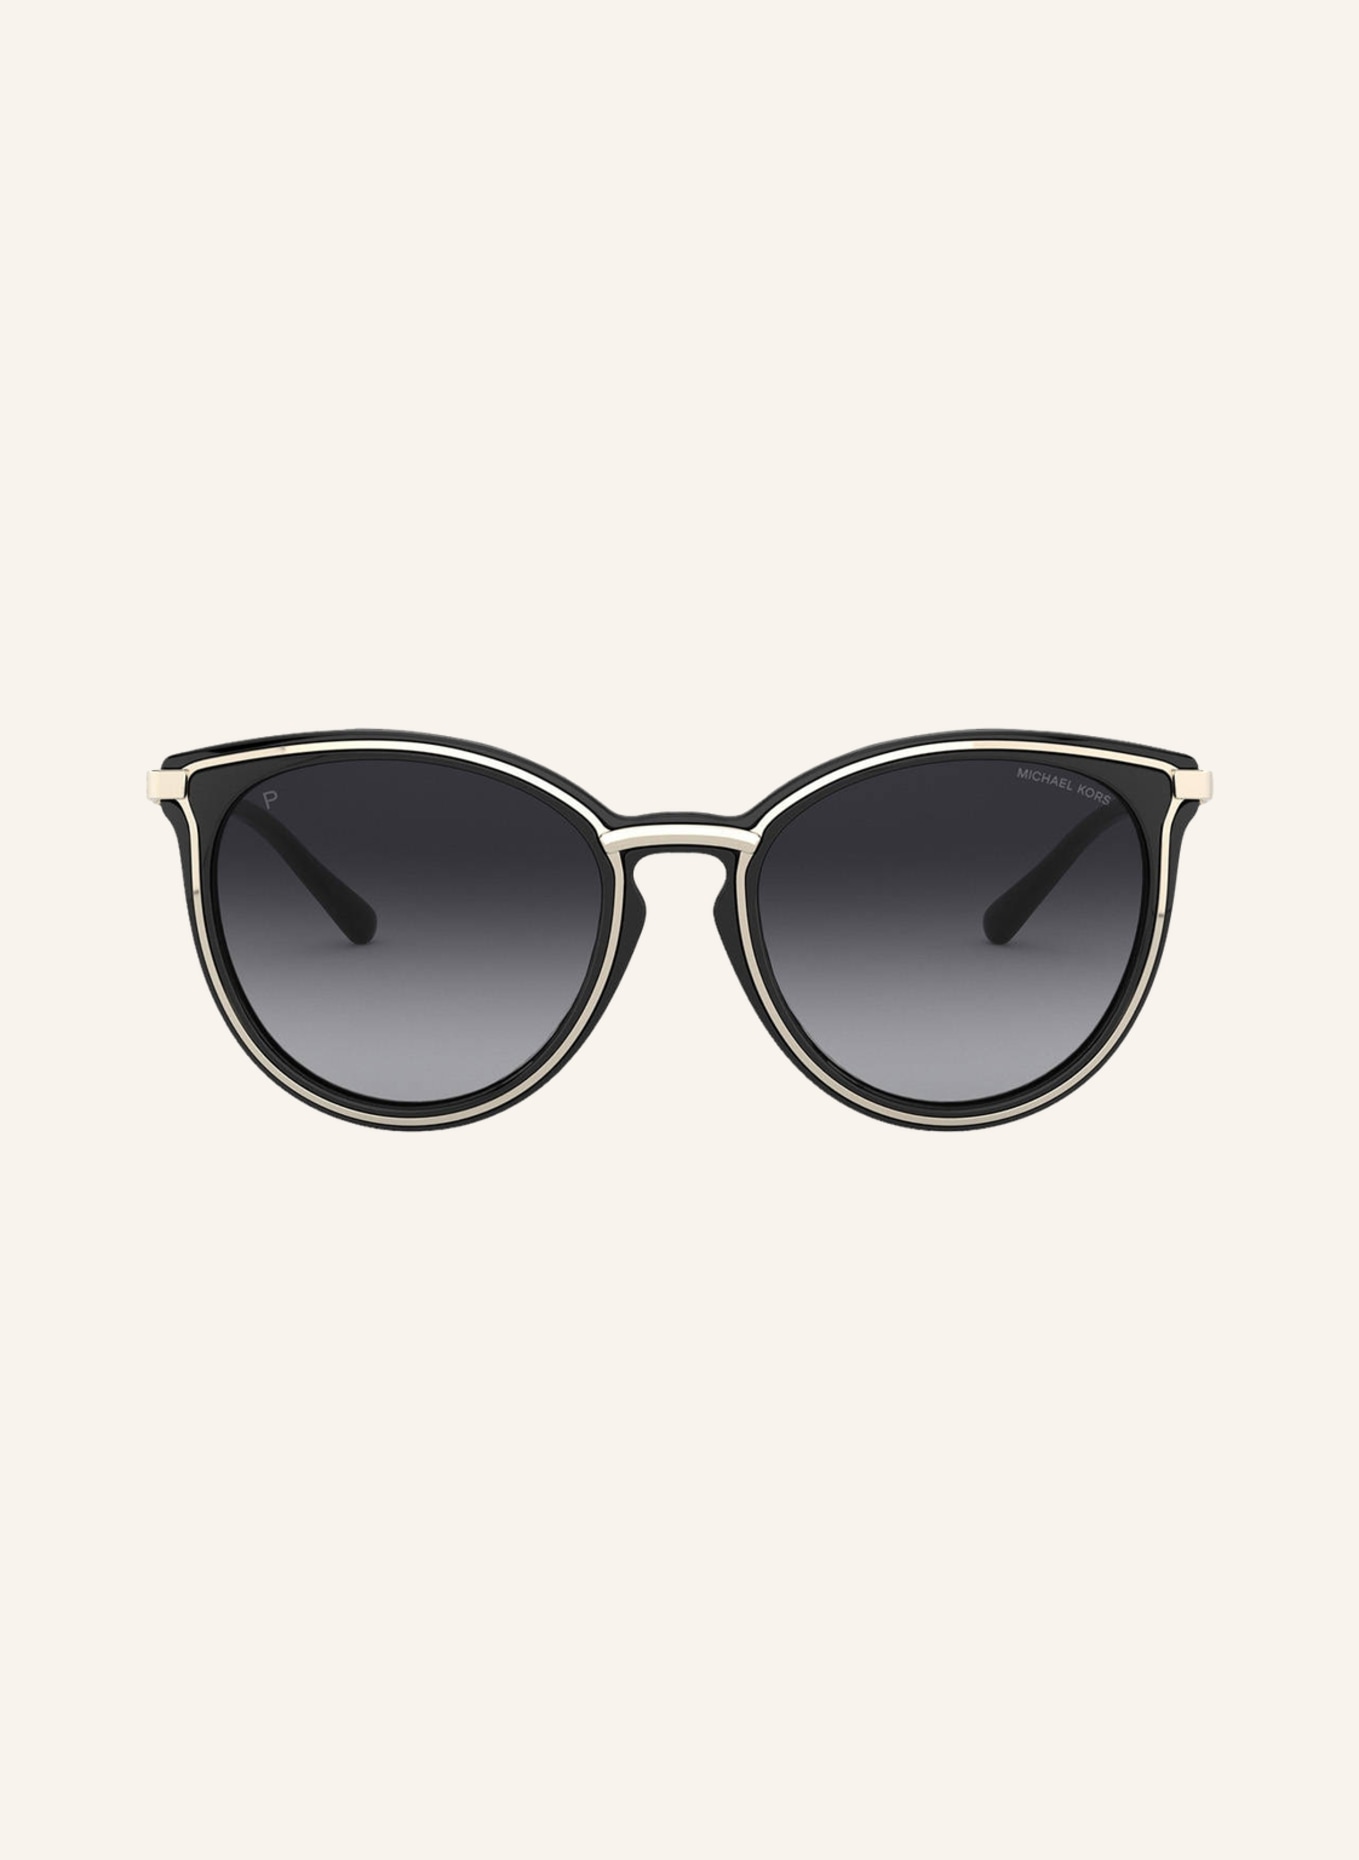 MICHAEL KORS Sunglasses MK1077, Color: 1014T3 - GOLD/ BLACK GRADIENT (Image 2)